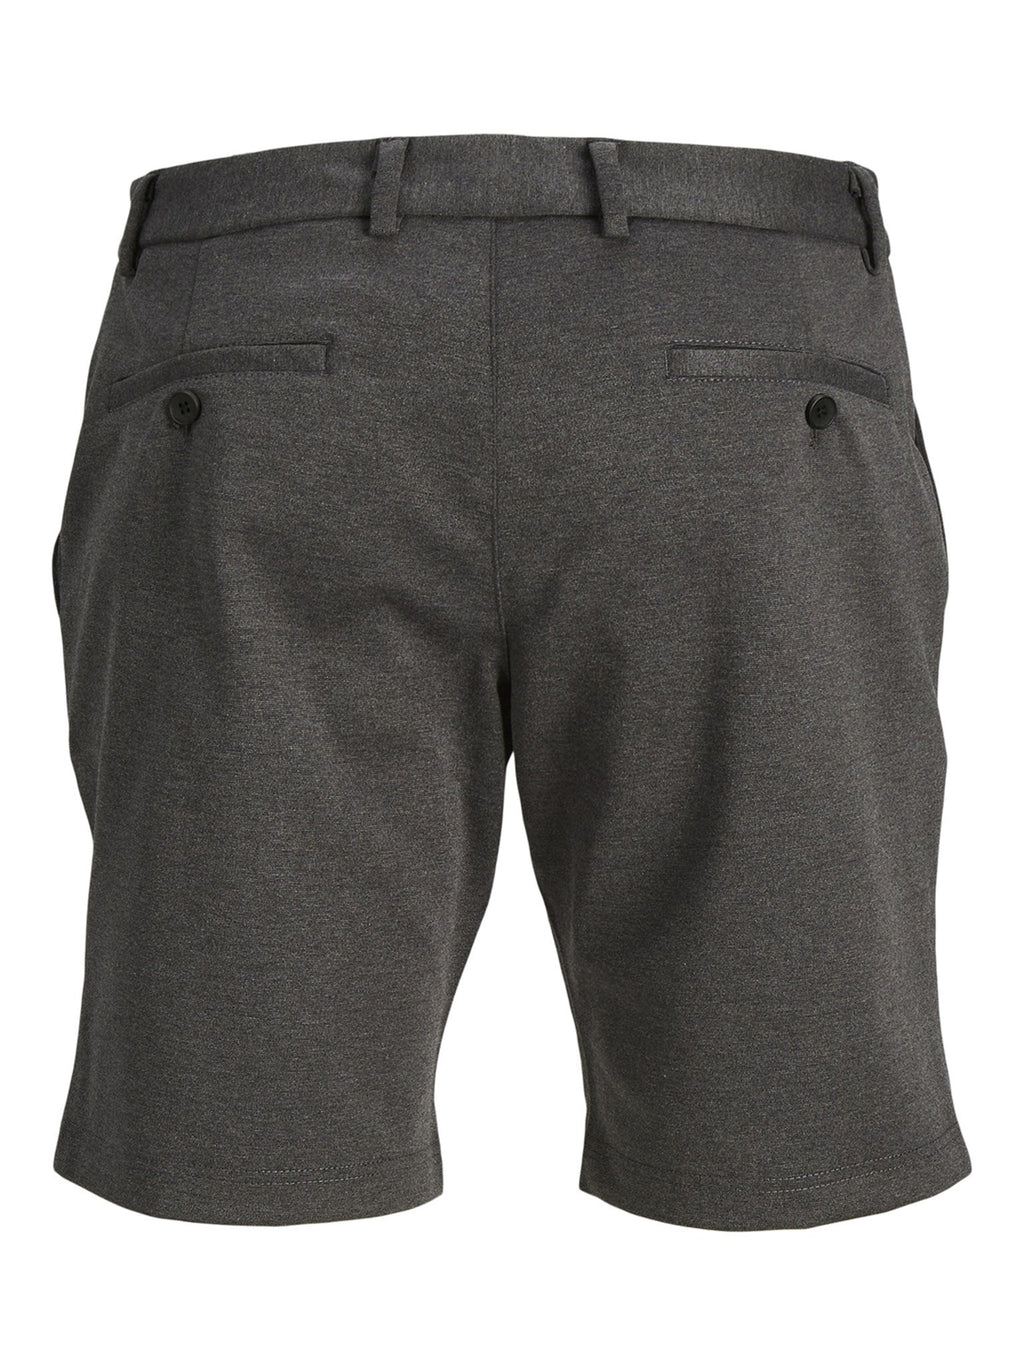 Los pantalones cortos de rendimiento originales - gris oscuro